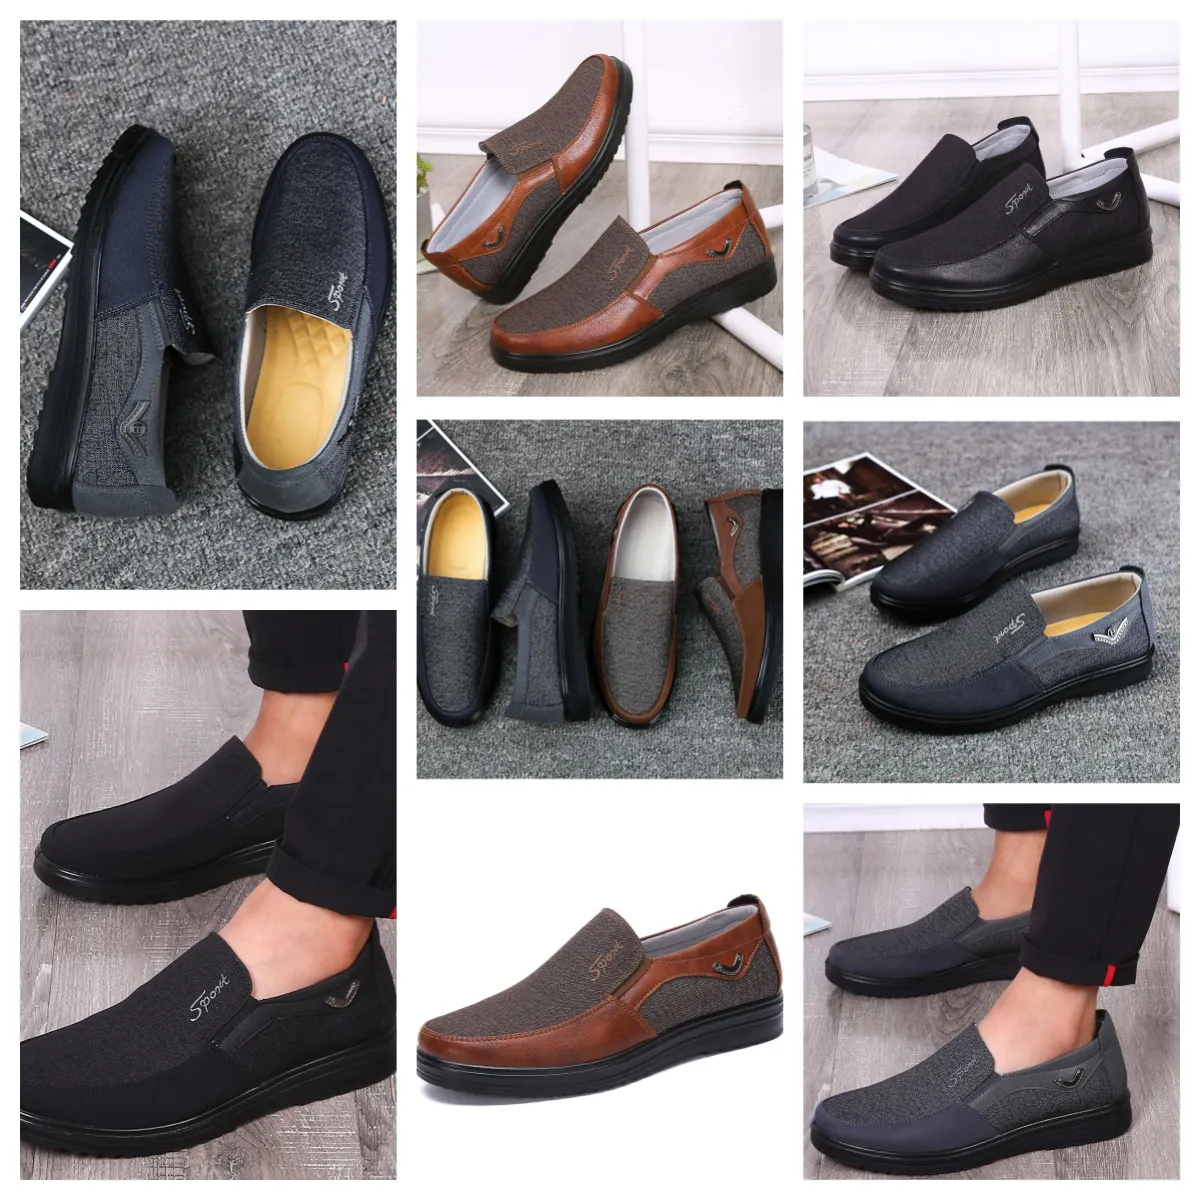 GAI conforto sapatos masculinos sapatos pretos dedos redondos festa ao ar livre banquetes ternos homens negócios calcanhar designer sapatos eur 38-50 softs